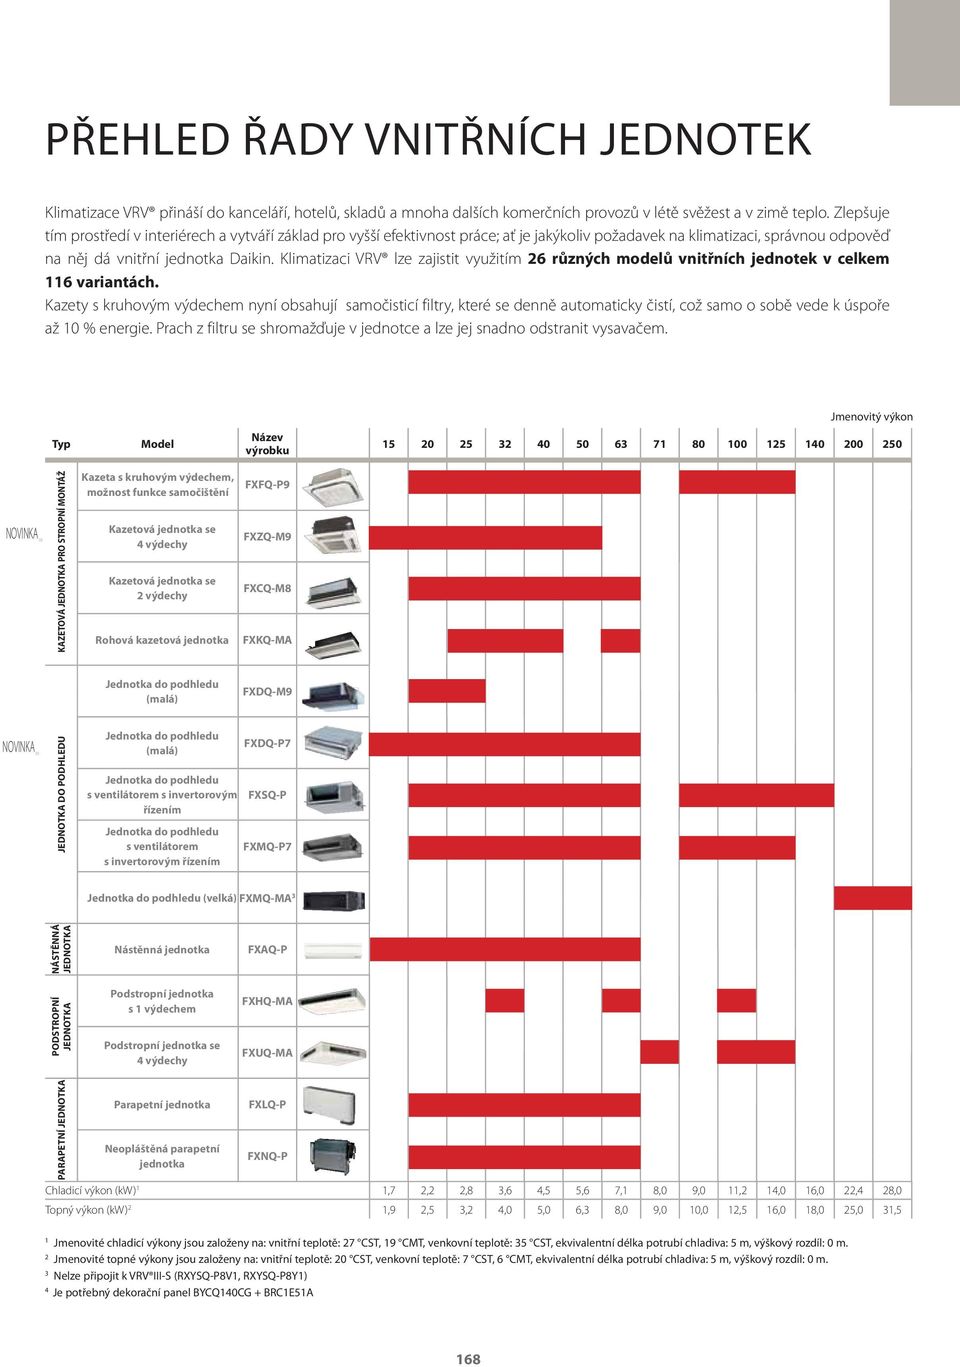 Klimatizaci VRV lze zajistit využitím 26 různých modelů vnitřních jednotek v celkem 116 variantách.